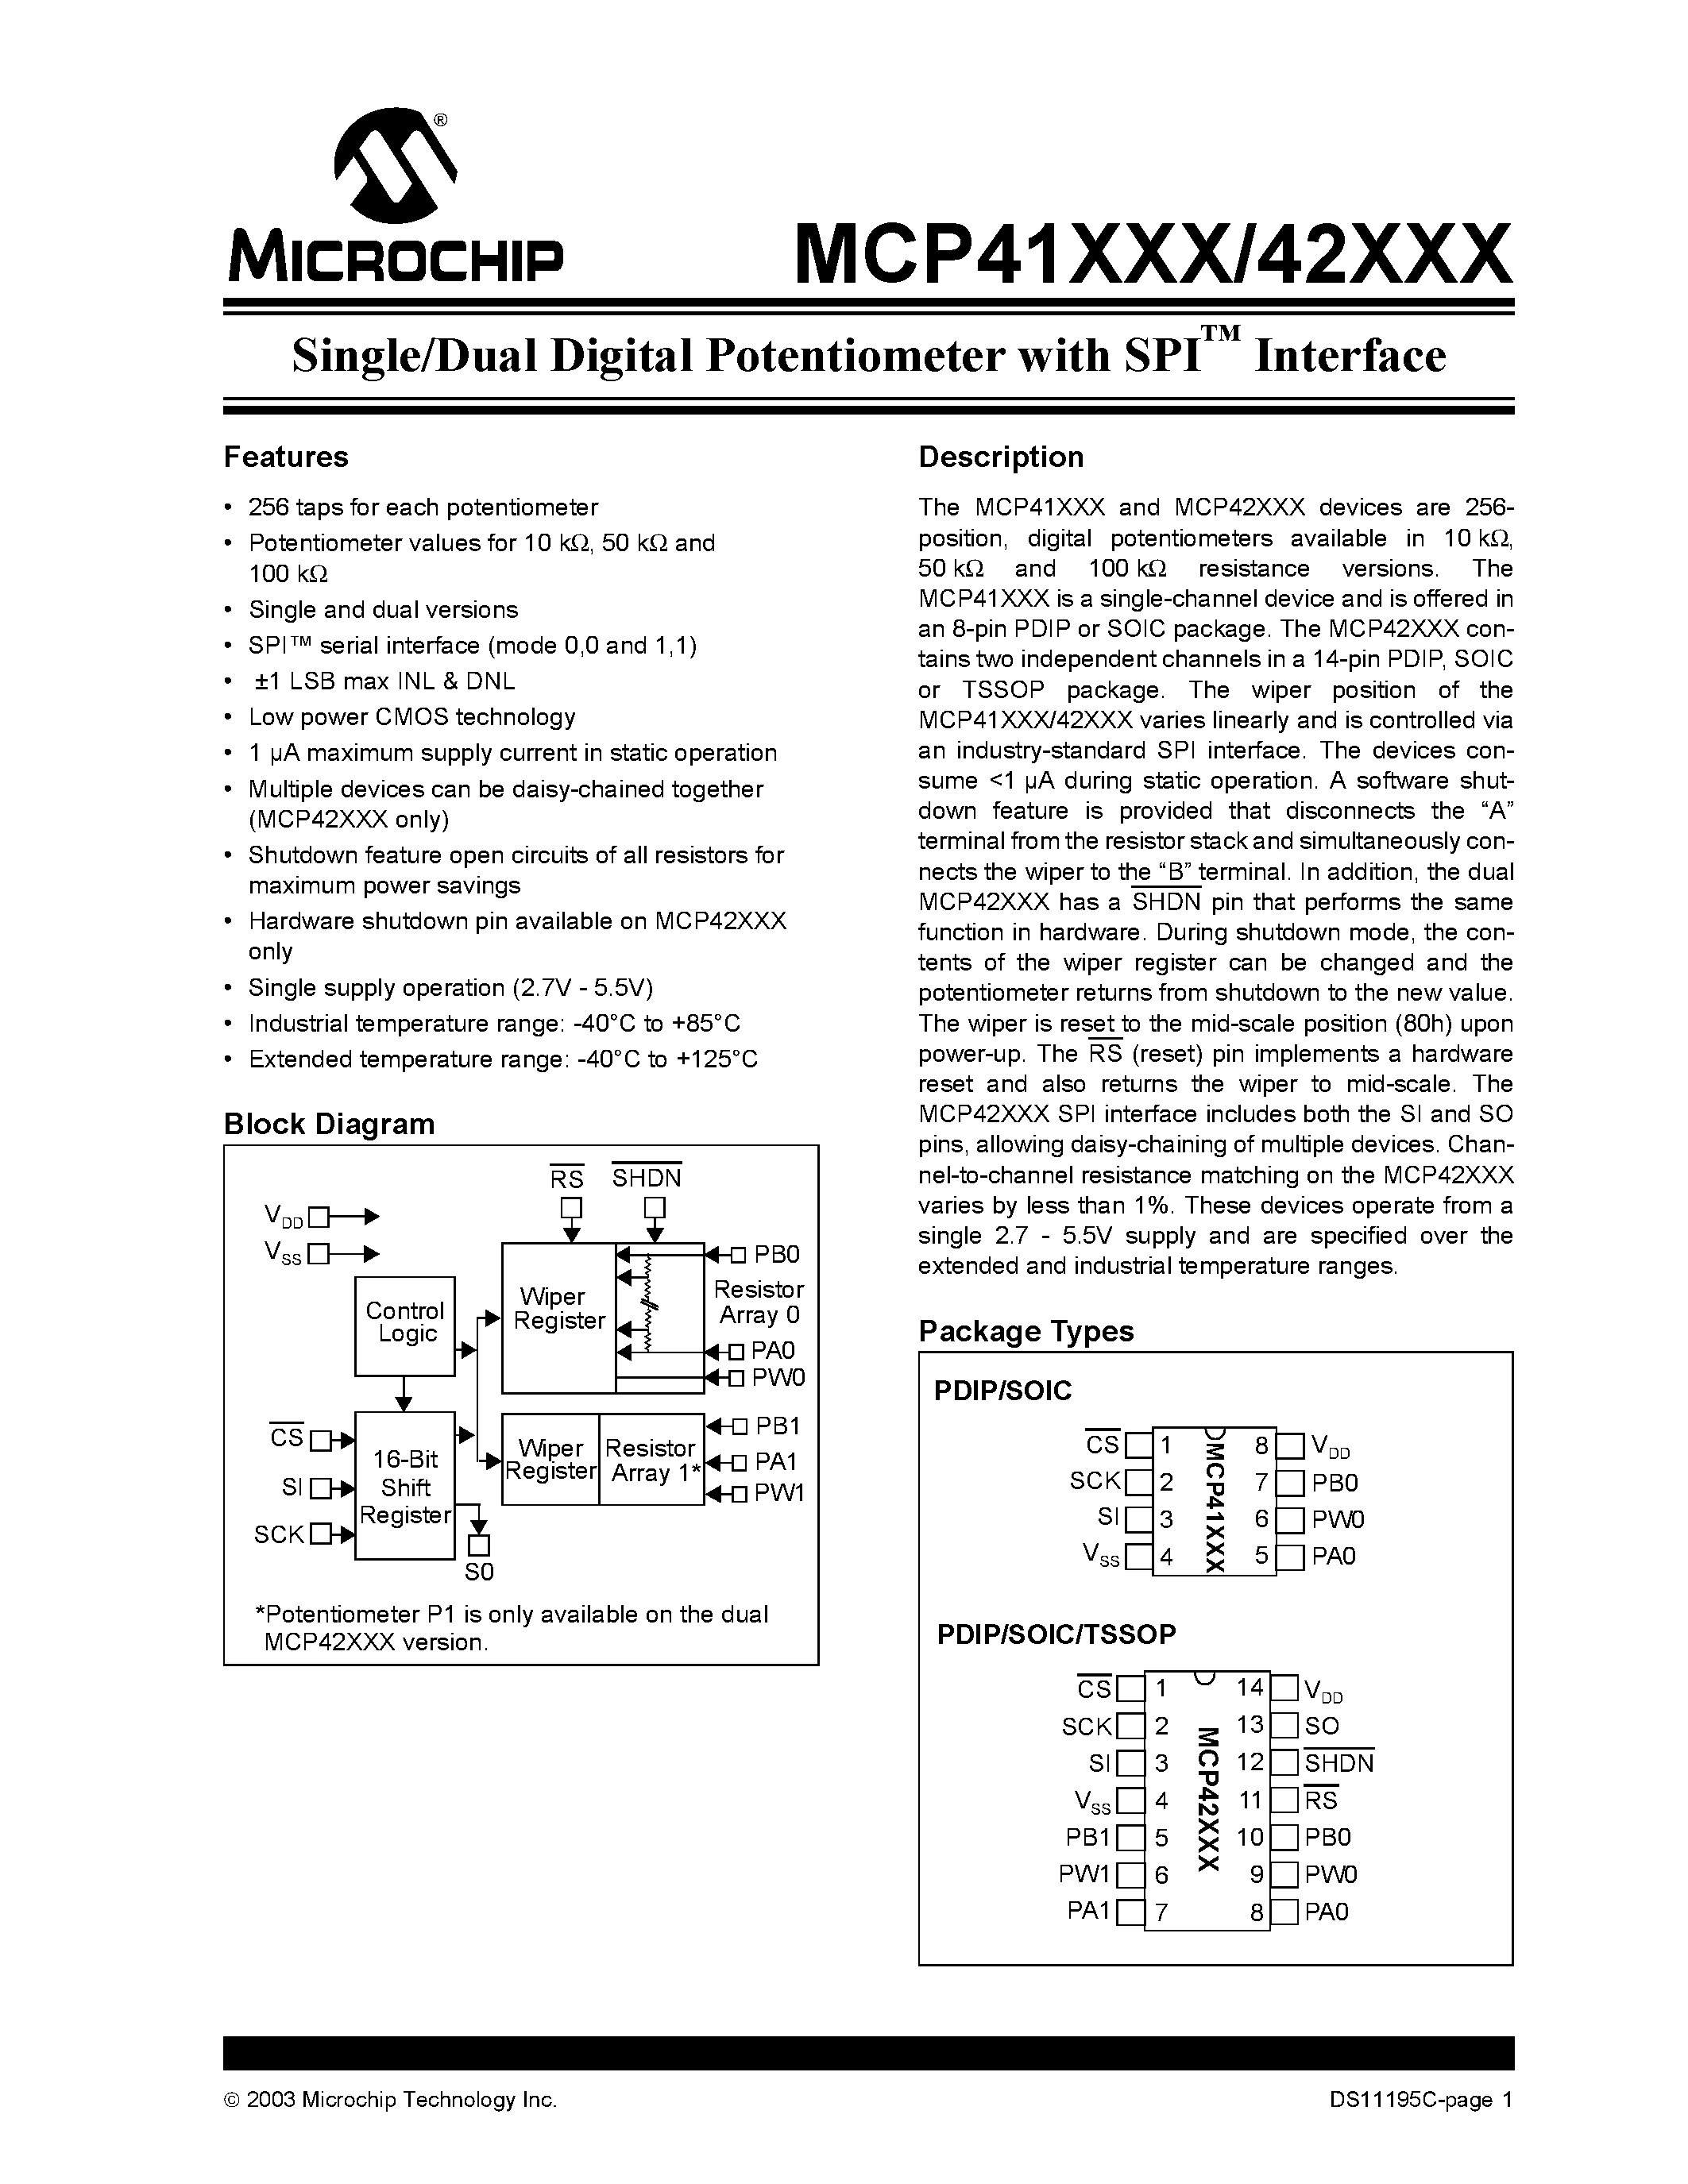 Даташит MCP41100-E/P - Single/Dual Digital Potentiometer with SPI Interface страница 1